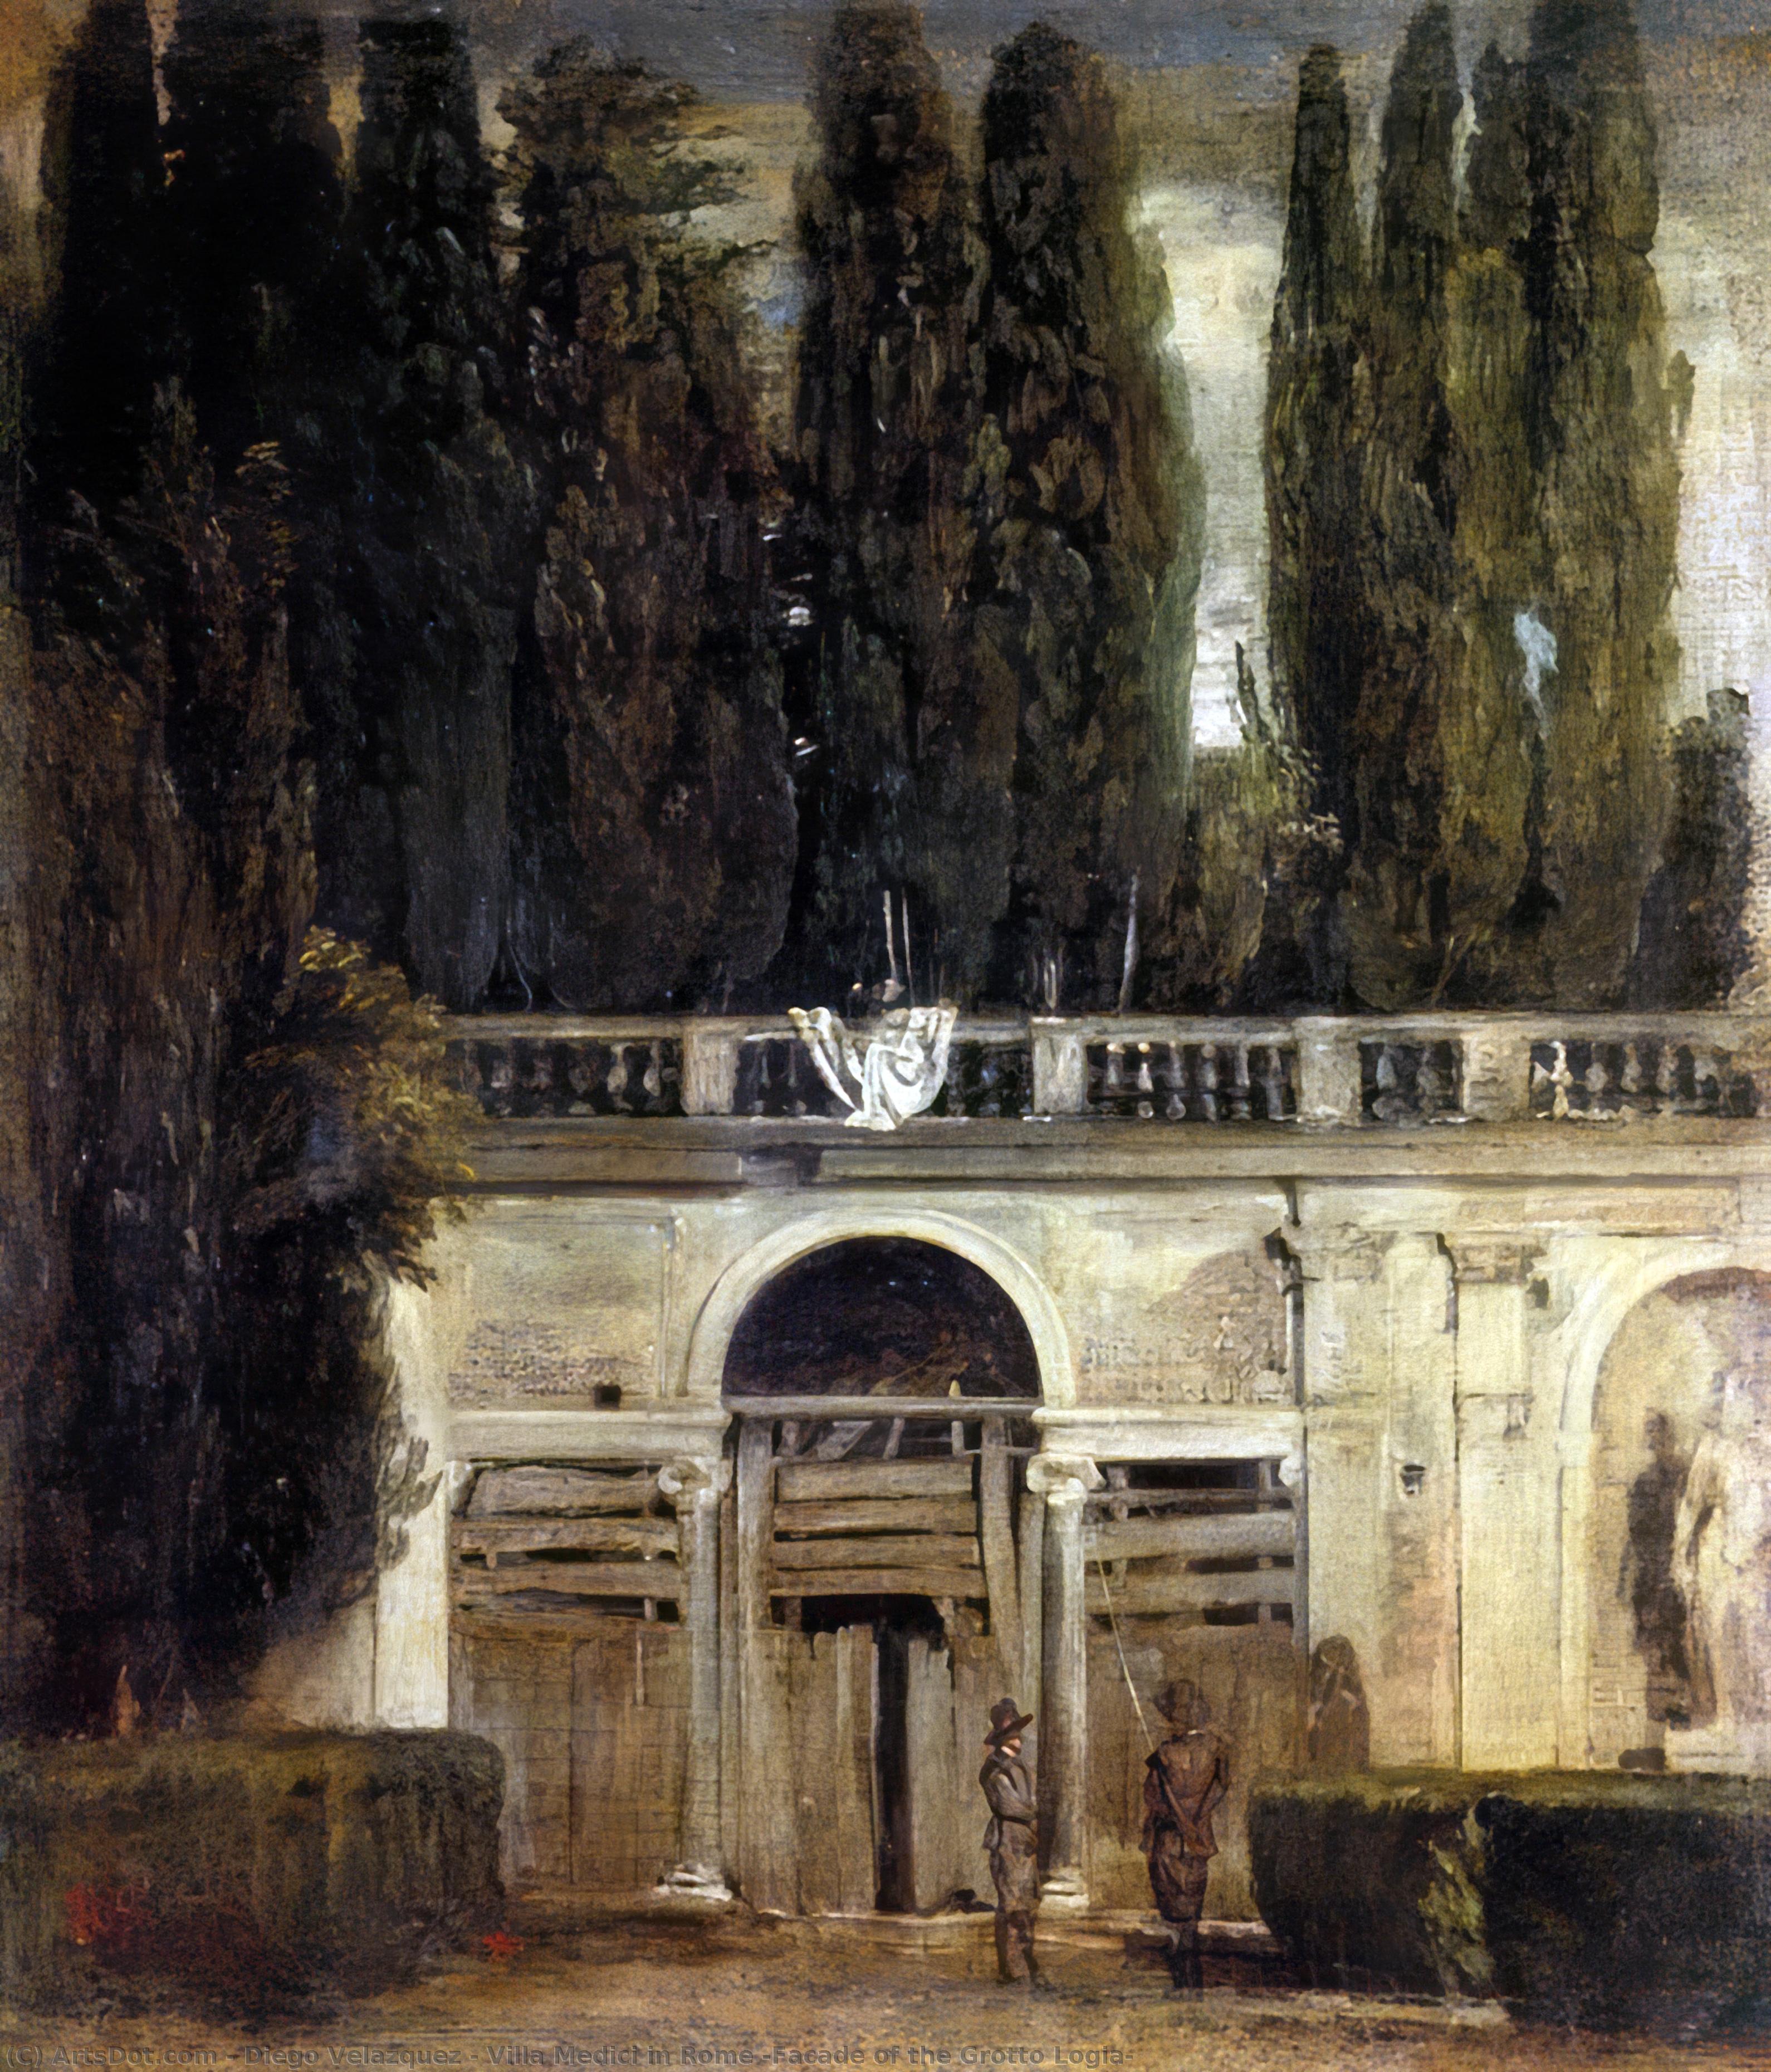 Wikioo.org - Bách khoa toàn thư về mỹ thuật - Vẽ tranh, Tác phẩm nghệ thuật Diego Velazquez - Villa Medici in Rome (Facade of the Grotto Logia)